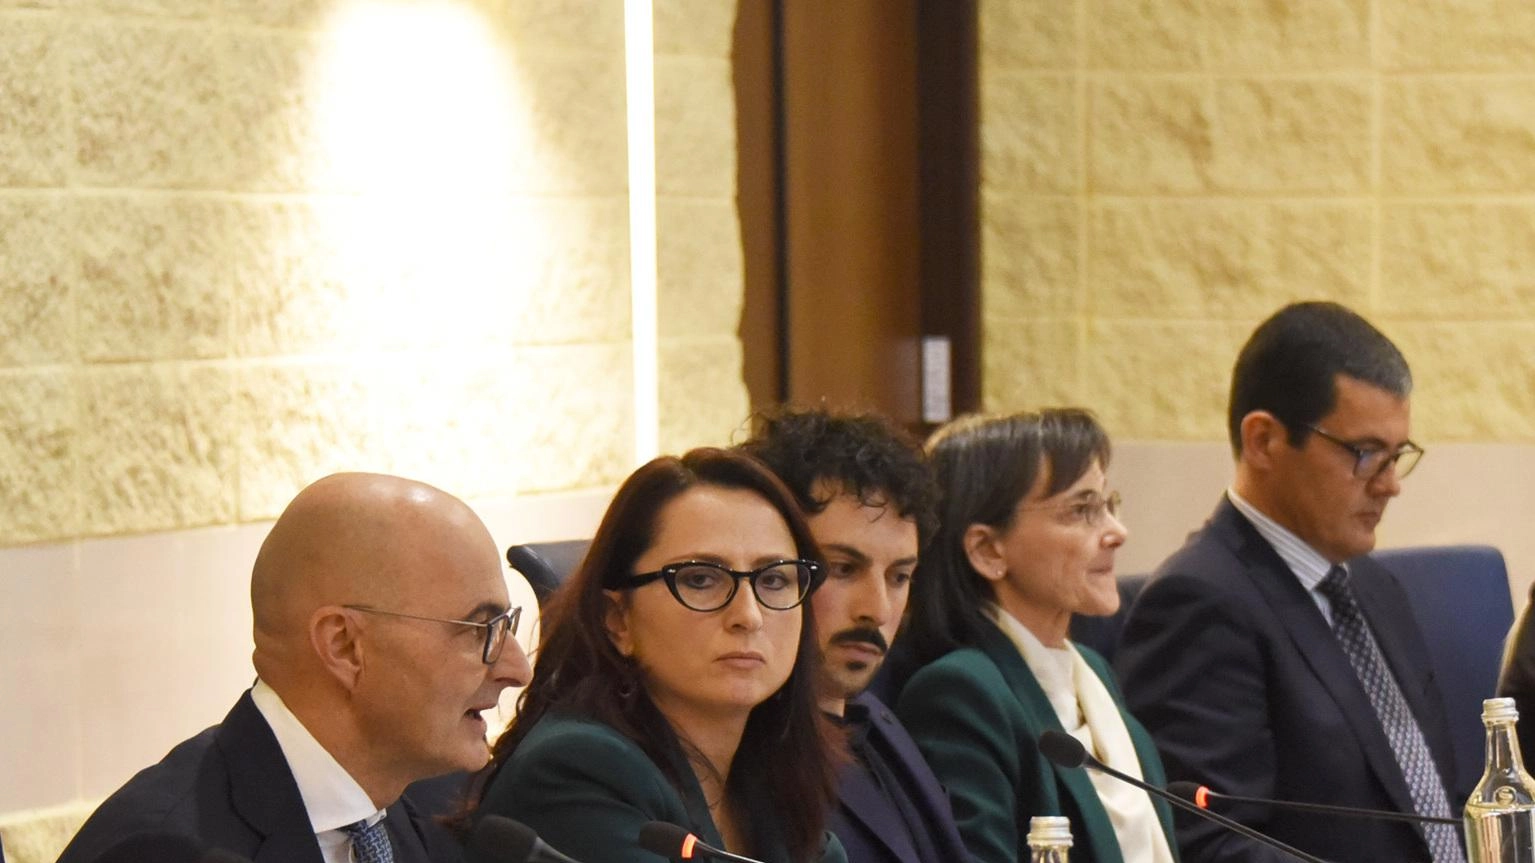 Al convegno dell’Anm e Ordine degli avvocati di Rimini il vicepresidente del Csm Fabio Pinelli: "Trovare più occasioni di scontro che convergenze non rende il miglior servizio alla comunità".